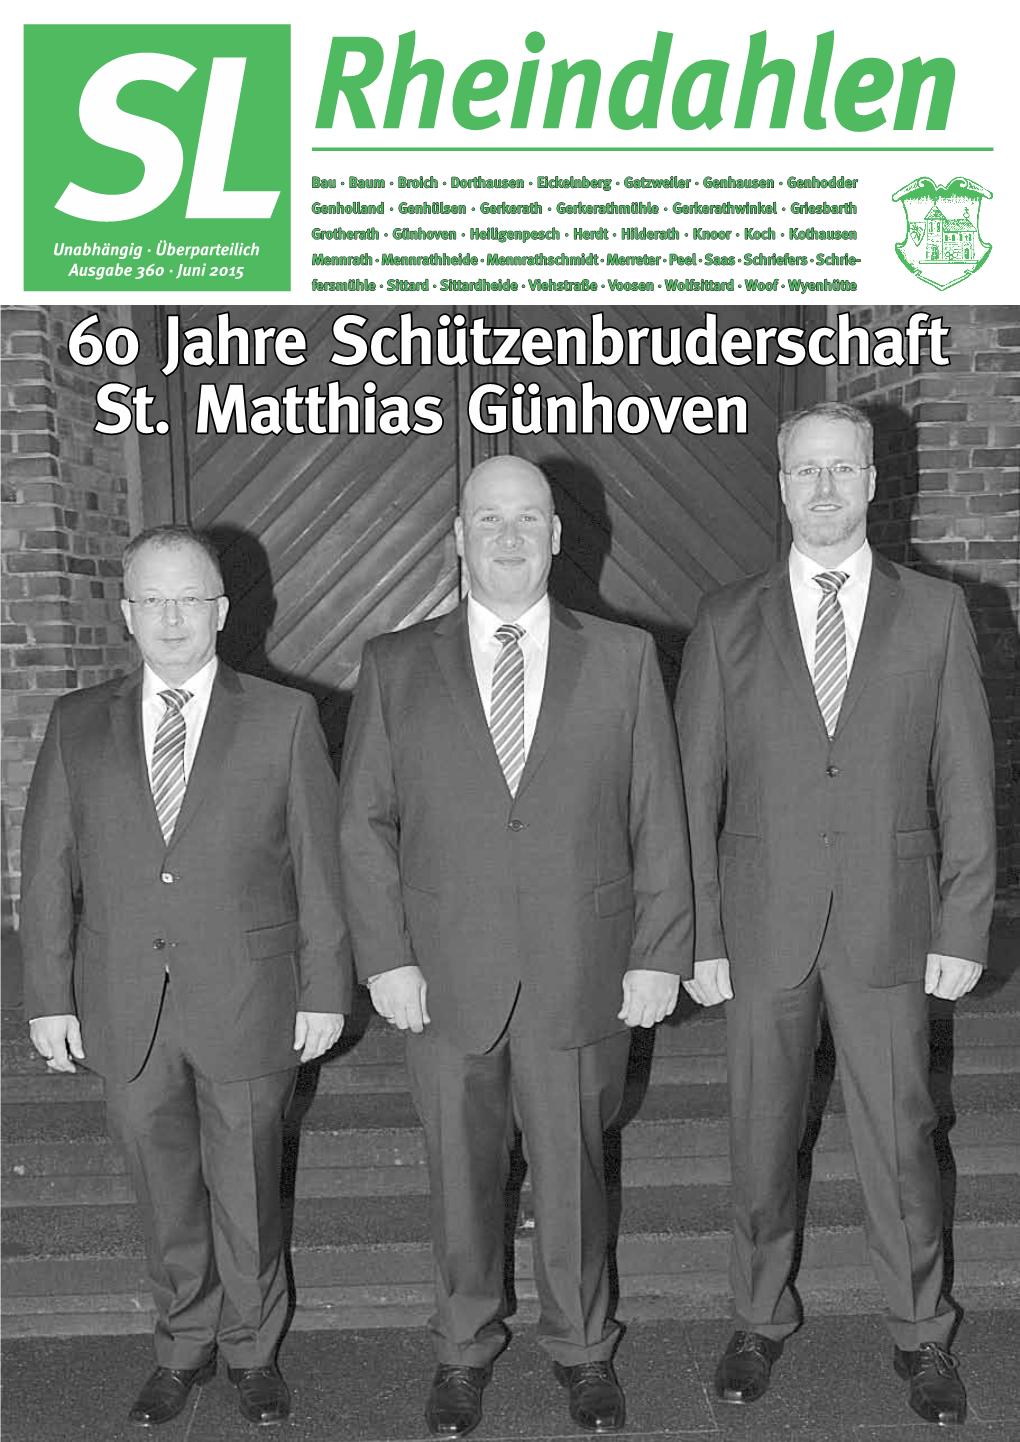 60 Jahre Schützenbruderschaft St. Matthias Günhoven